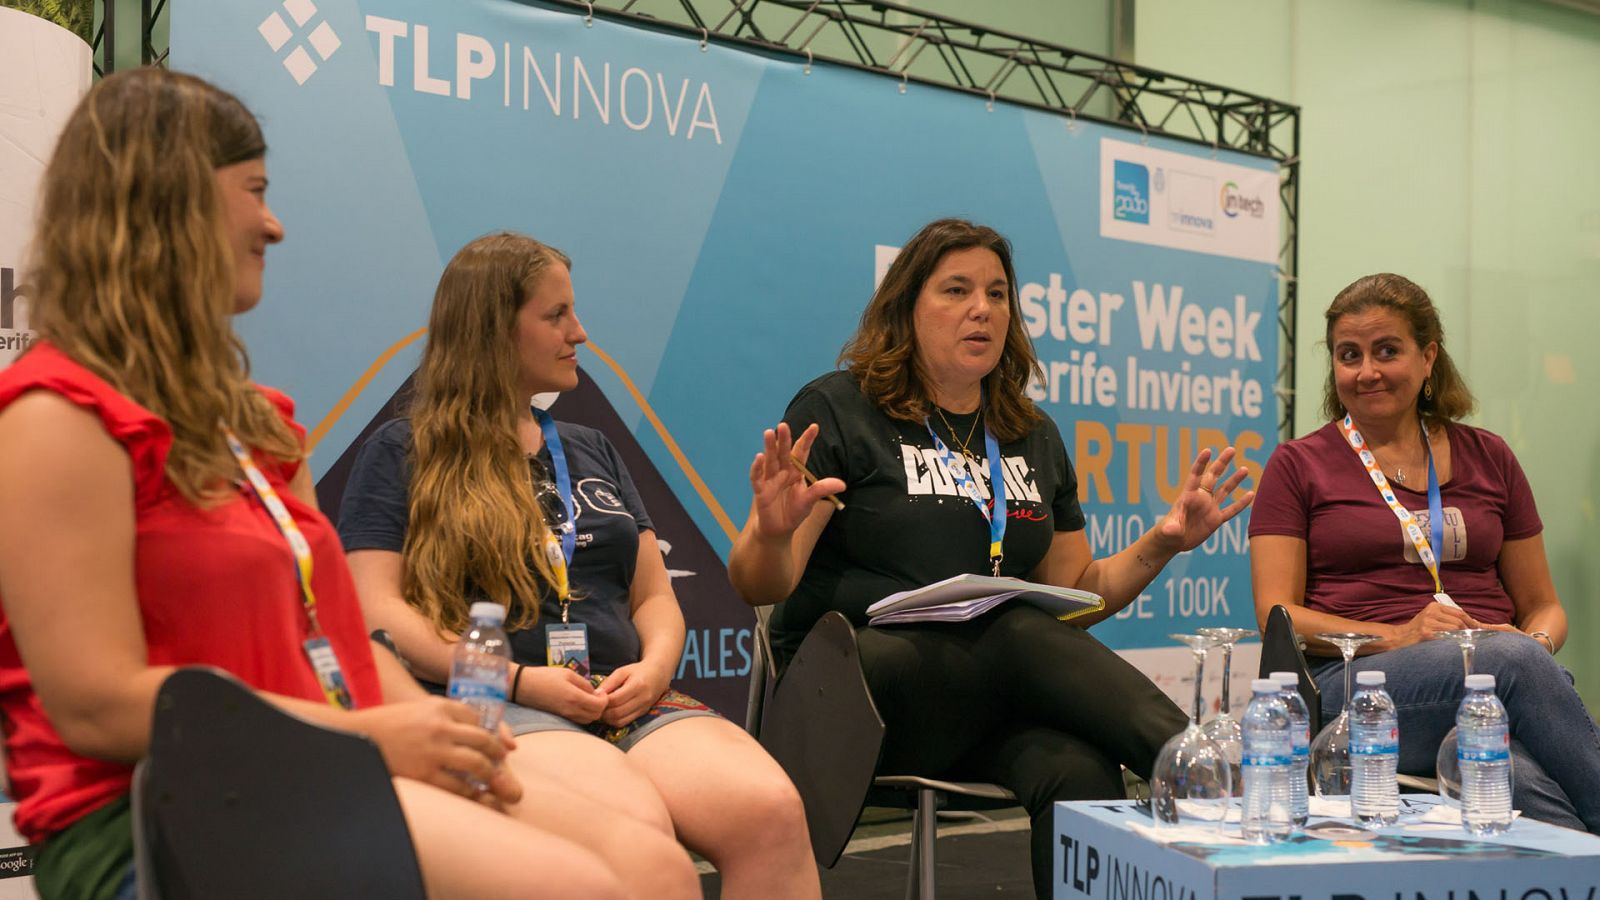 Mesa redonda 'Mujeres in tech' en TLP Innova